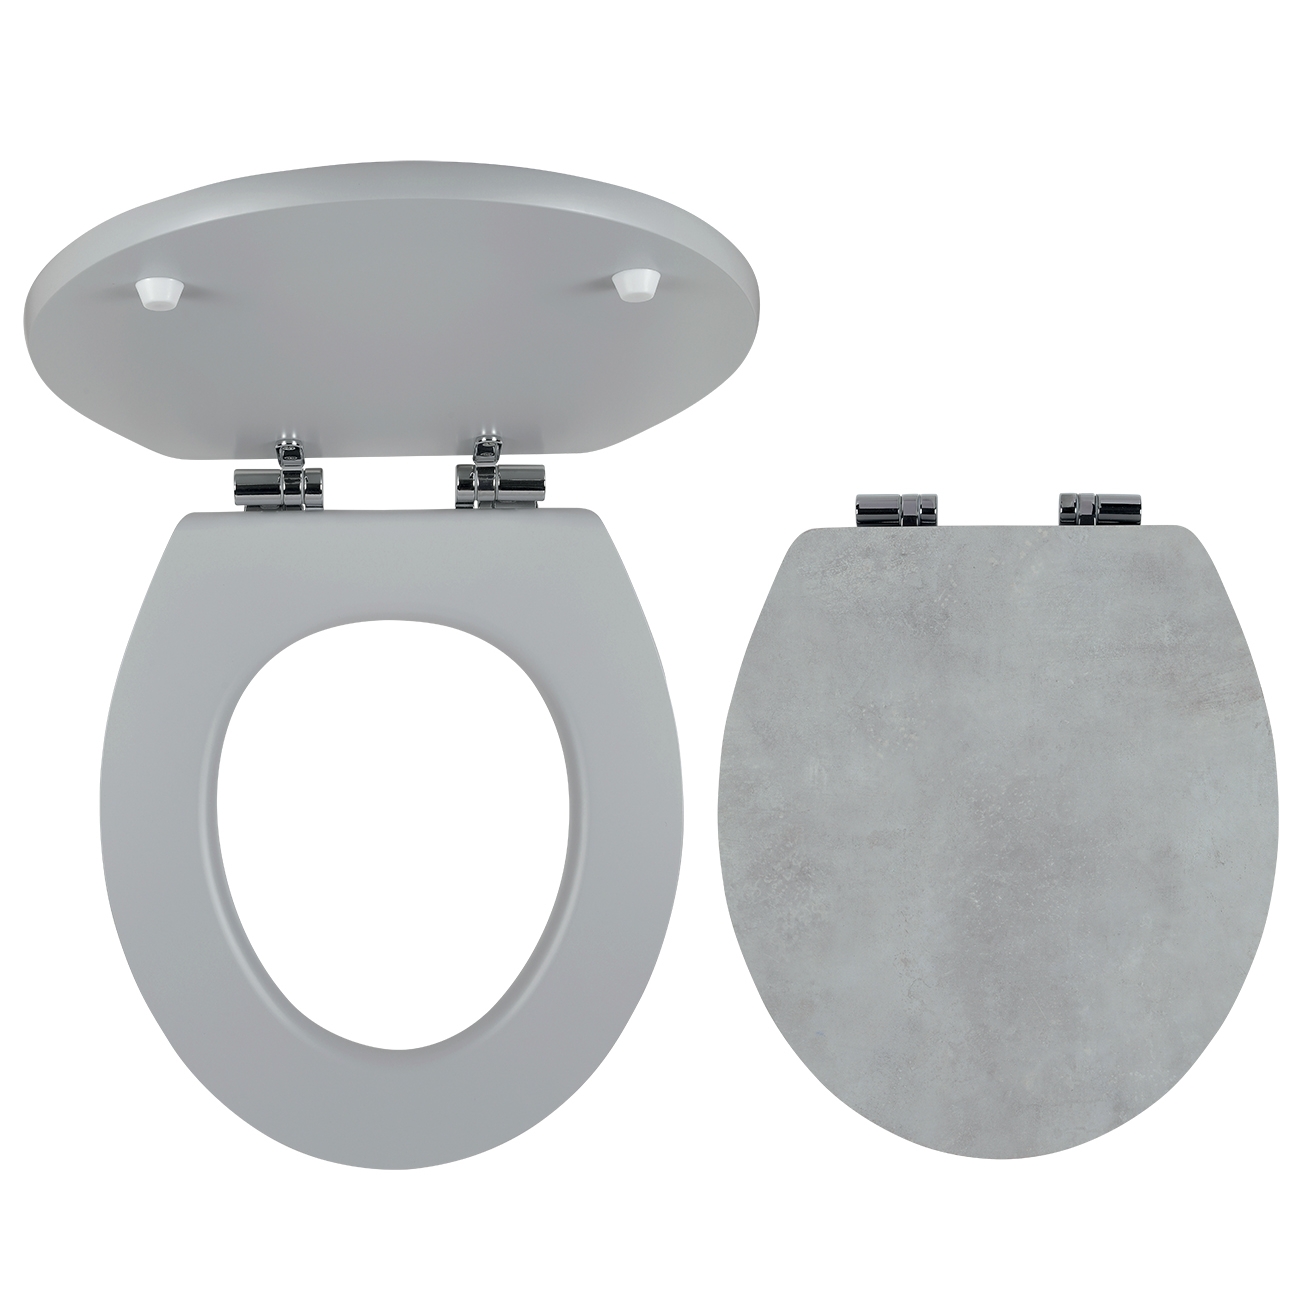 Capac WC din MDF, Ferro, model piatra, inchidere soft close, 372 x 435 mm